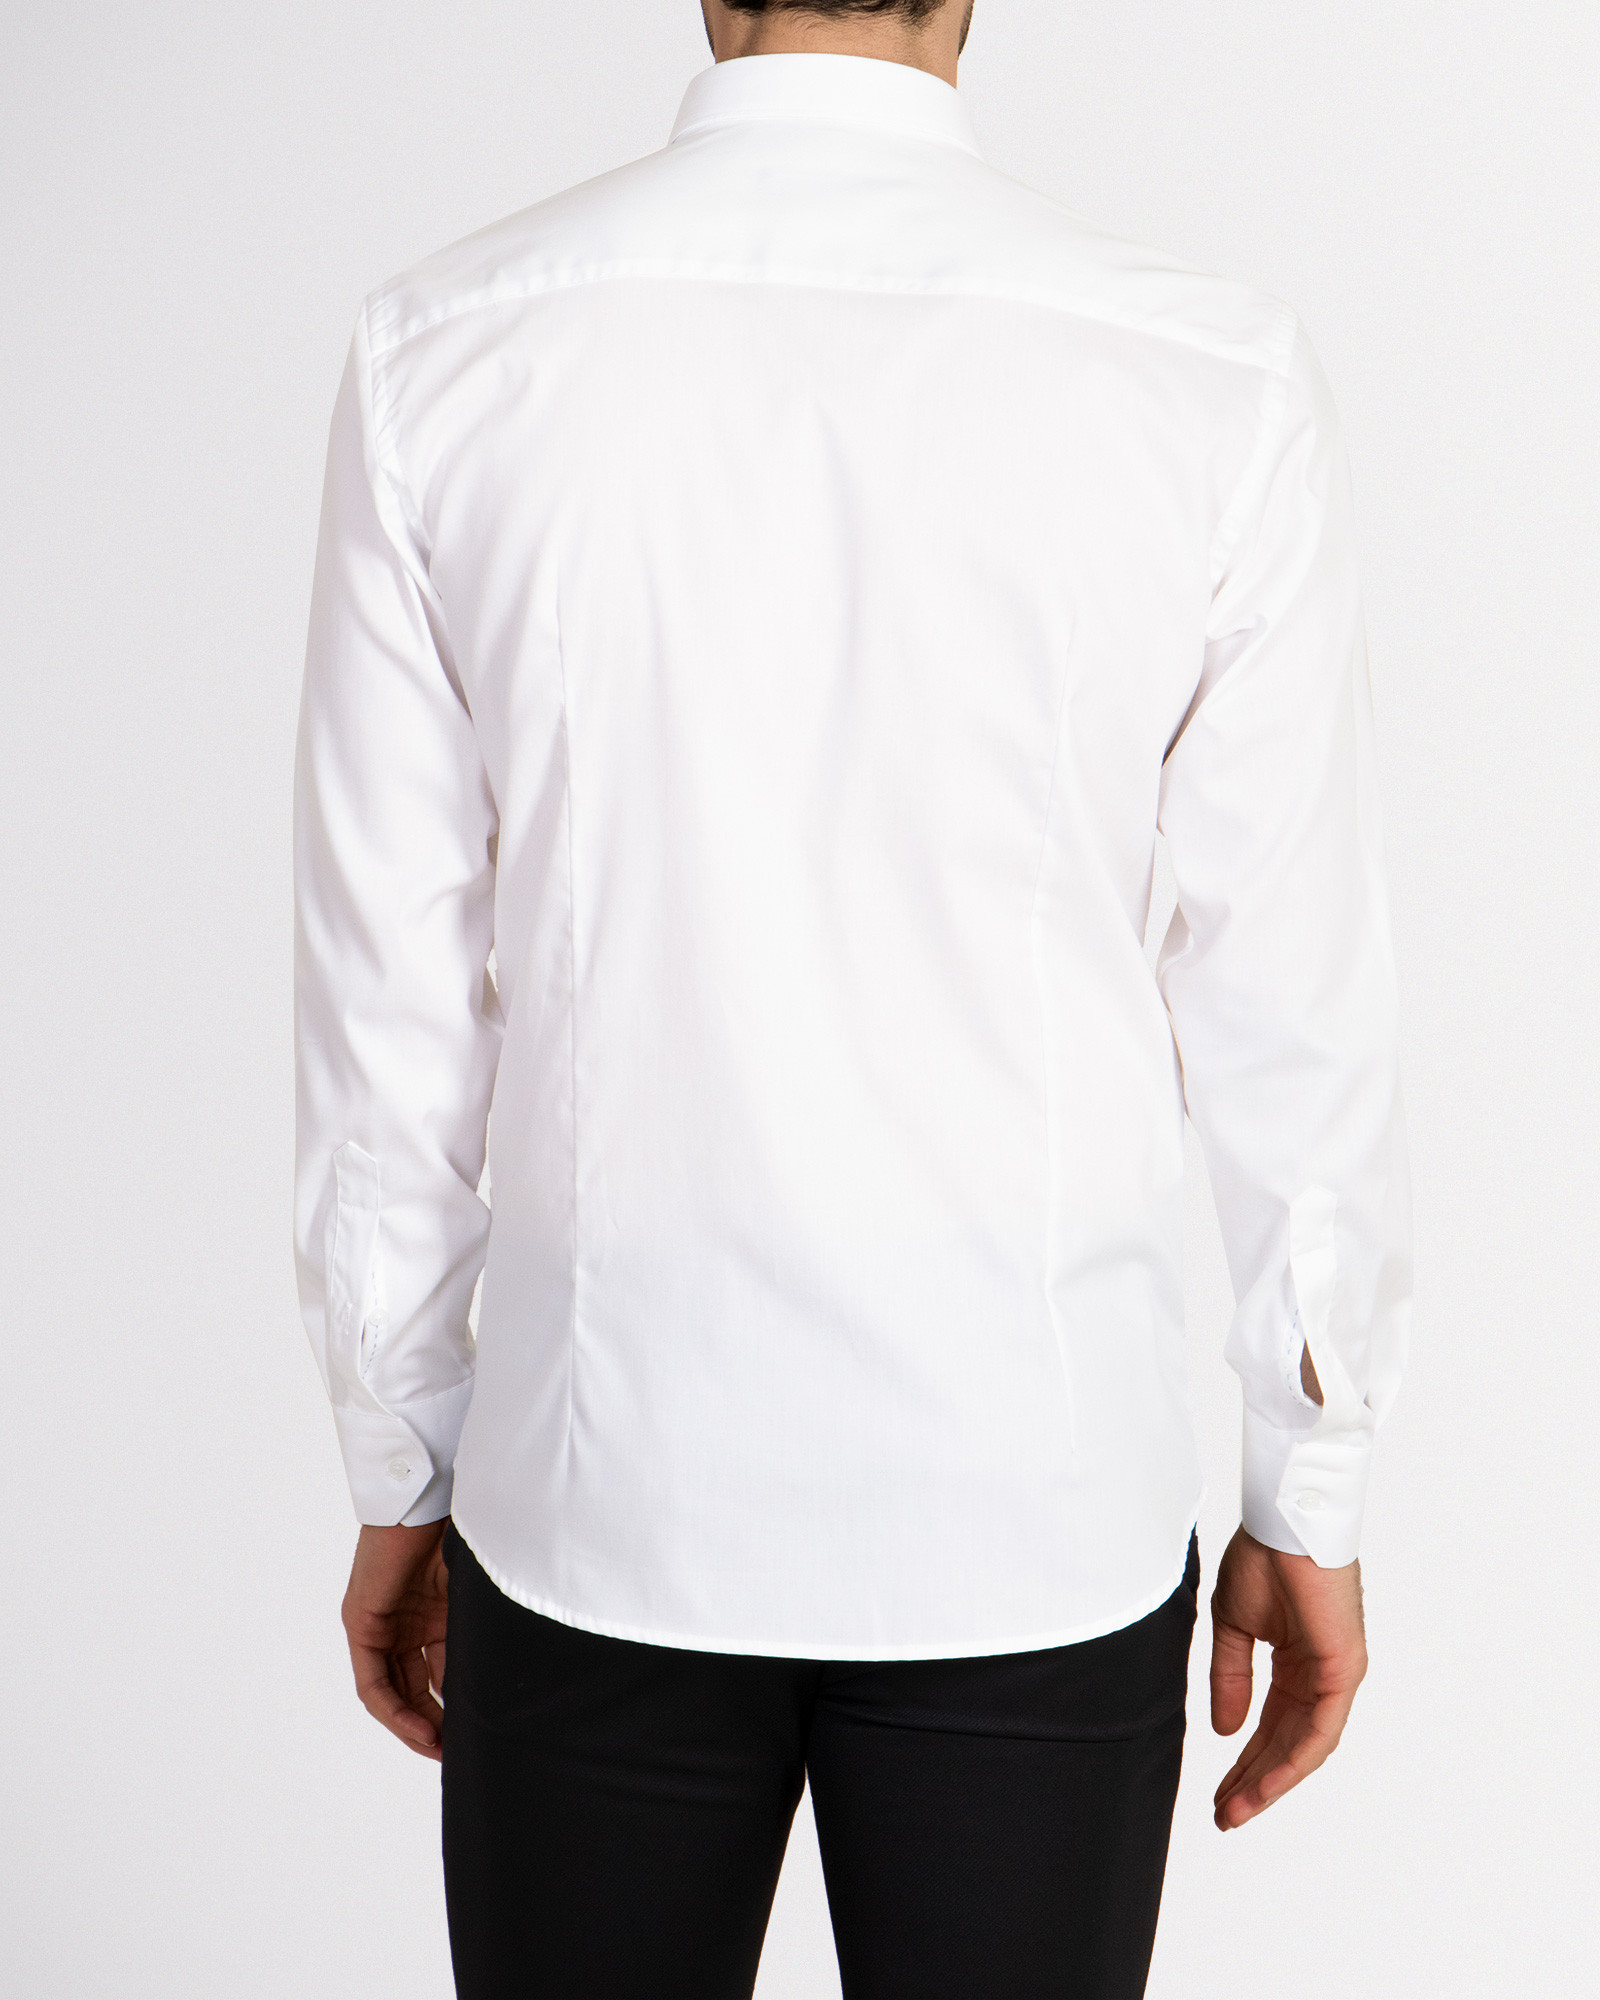 پیراهن آستین بلند رسمی سفید 18421171